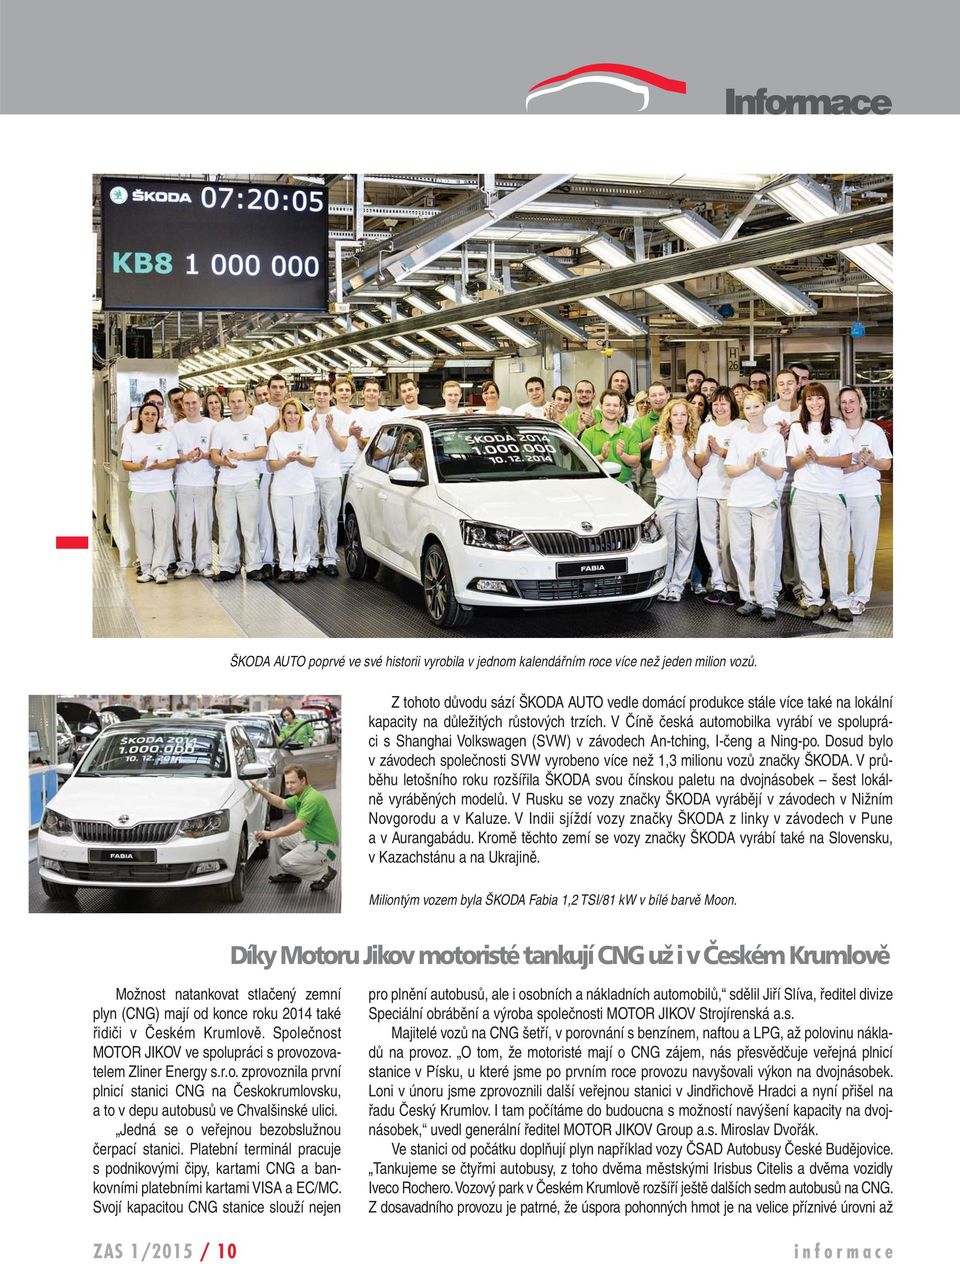 V Číně česká automobilka vyrábí ve spolupráci s Shanghai Volkswagen (SVW) v závodech An-tching, I-čeng a Ning-po. Dosud bylo v závodech společnosti SVW vyrobeno více než 1,3 milionu vozů značky ŠKODA.